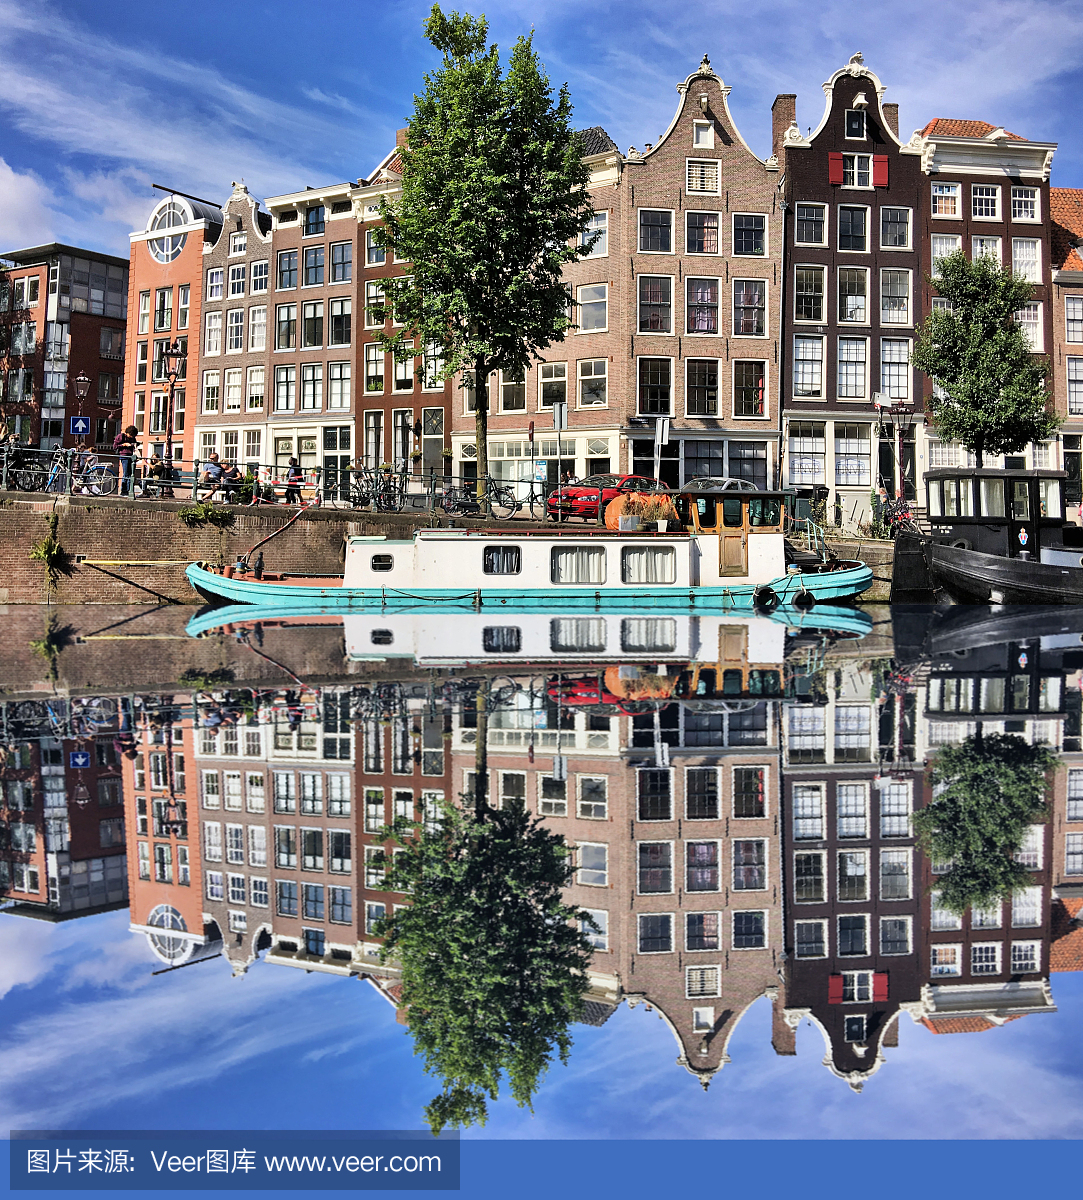 城市生活,荷兰文化,荷兰北部,著名景点